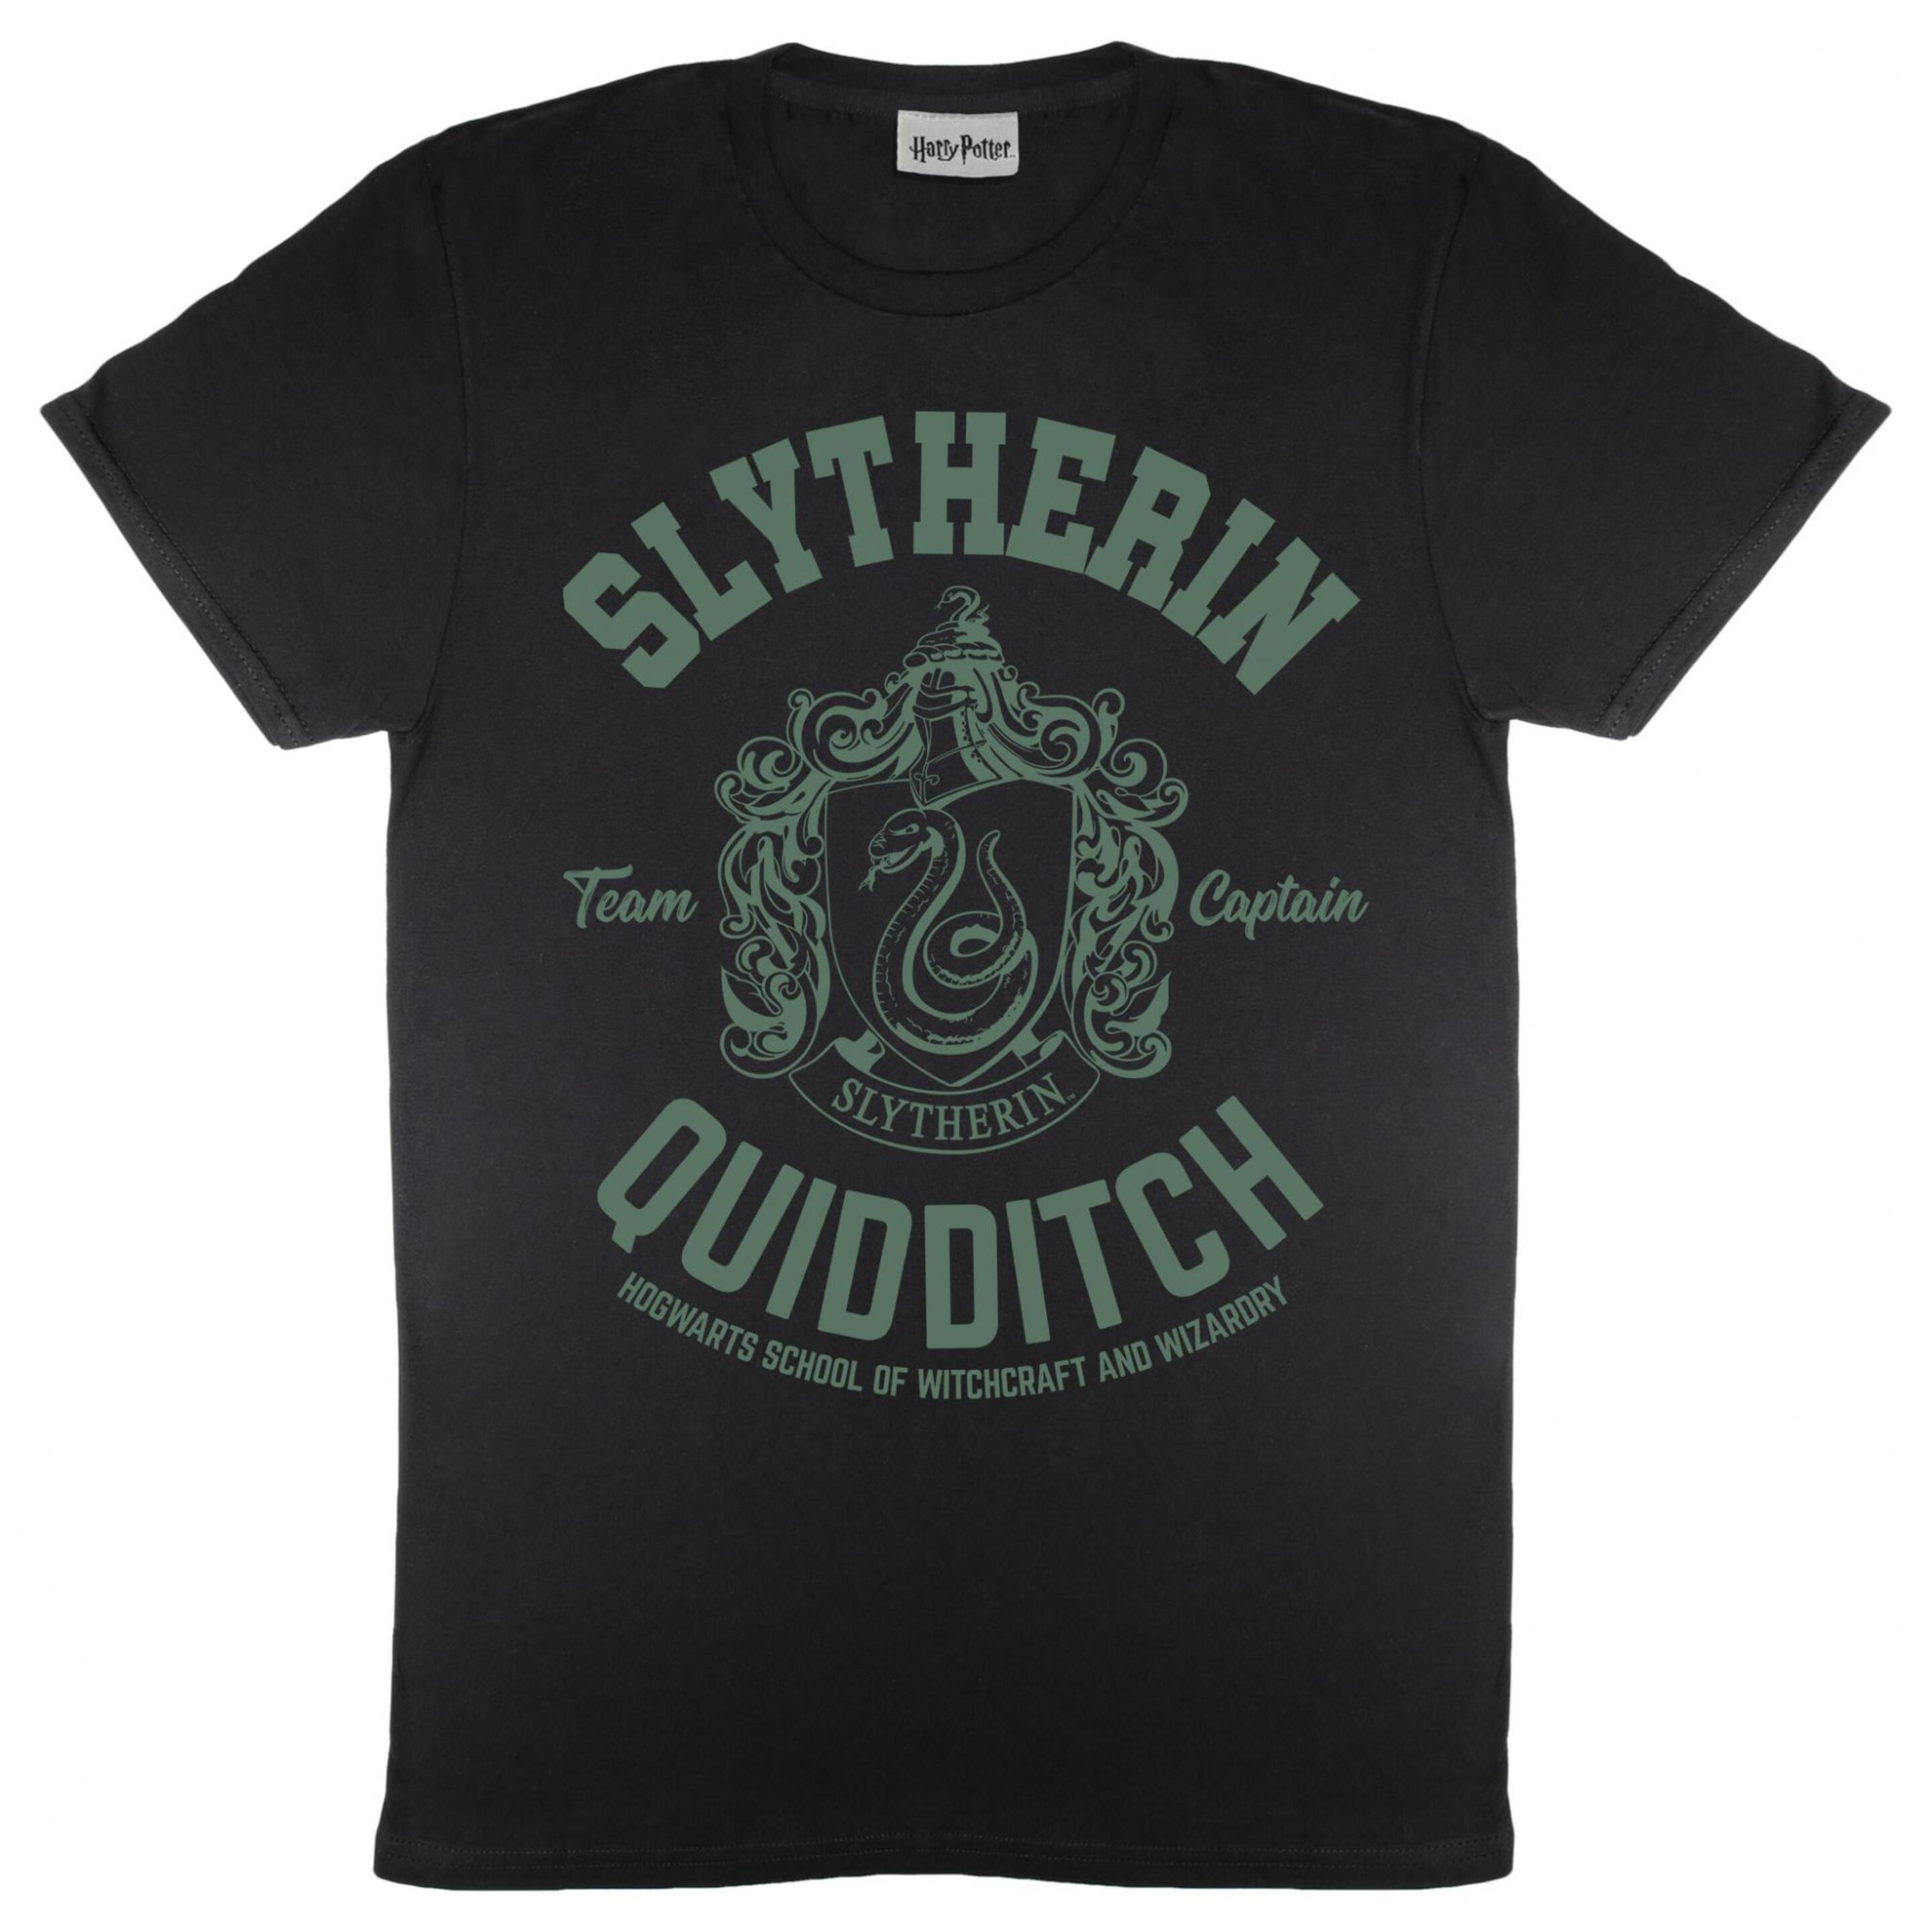 Camiseta Boyfriend Slytherin Quidditch Harry Potter